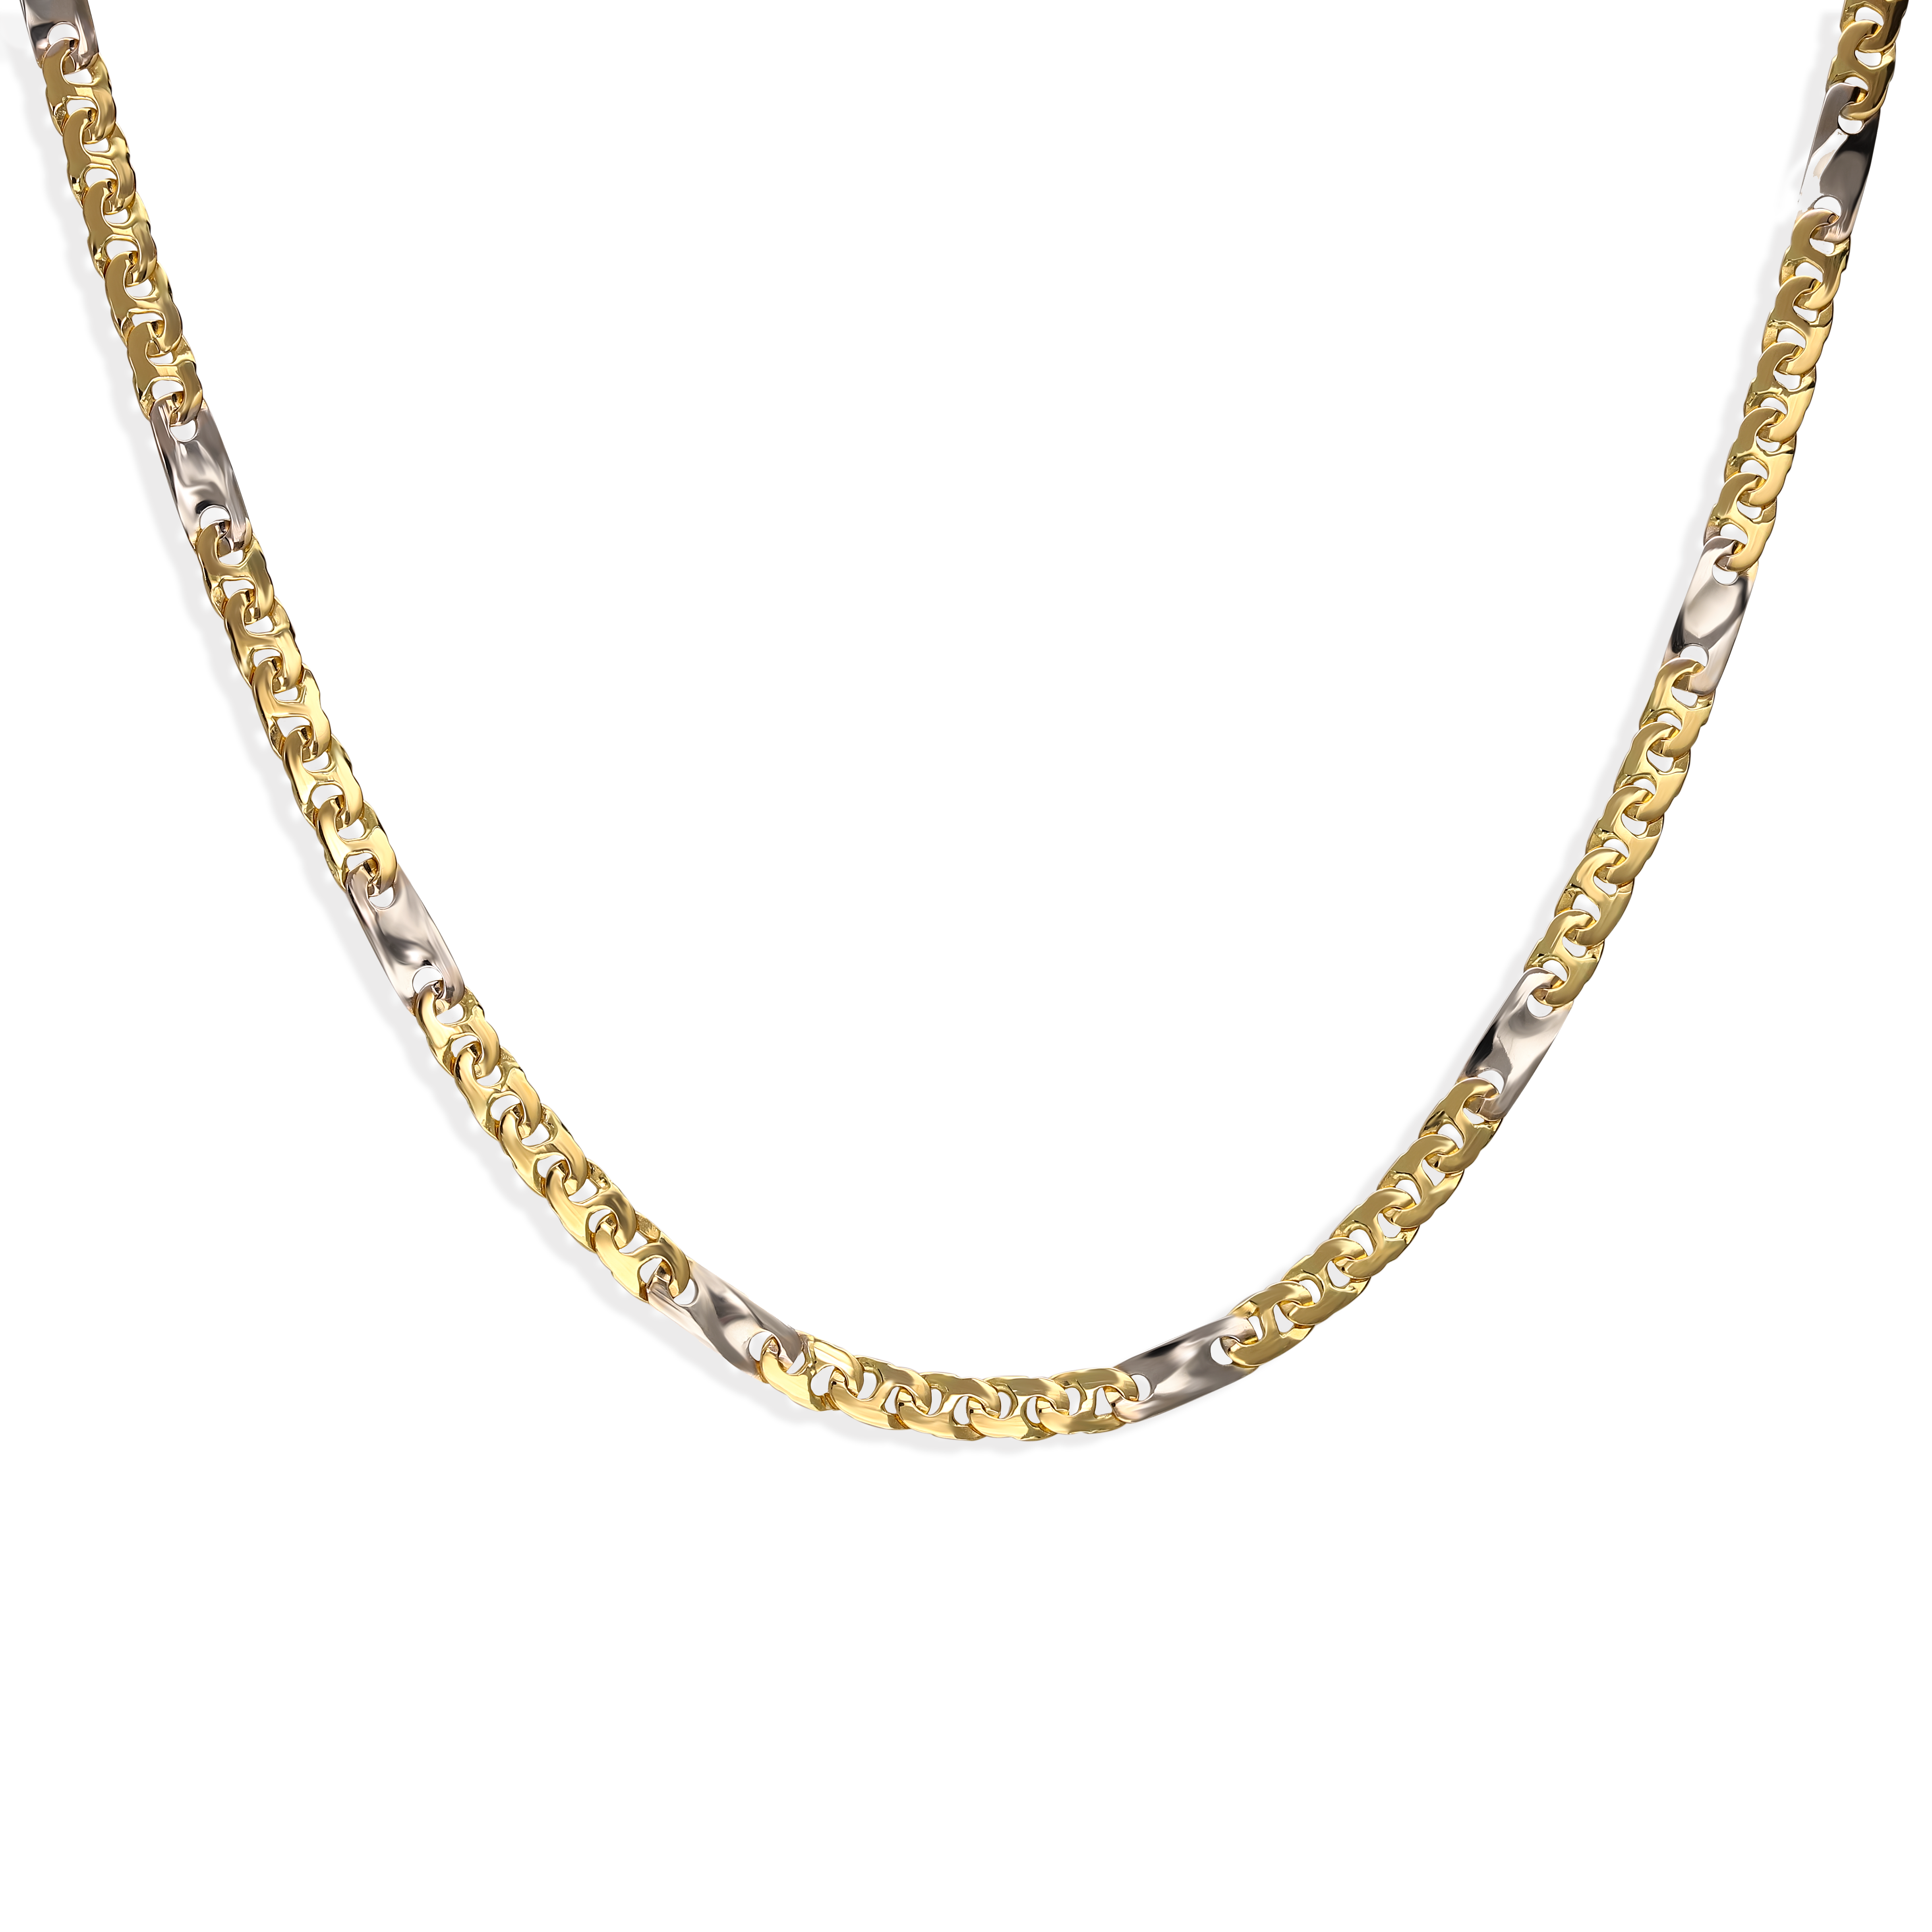 Łańcuch złoty w fantazyjnym splocie, długość 55 cm, próba 585